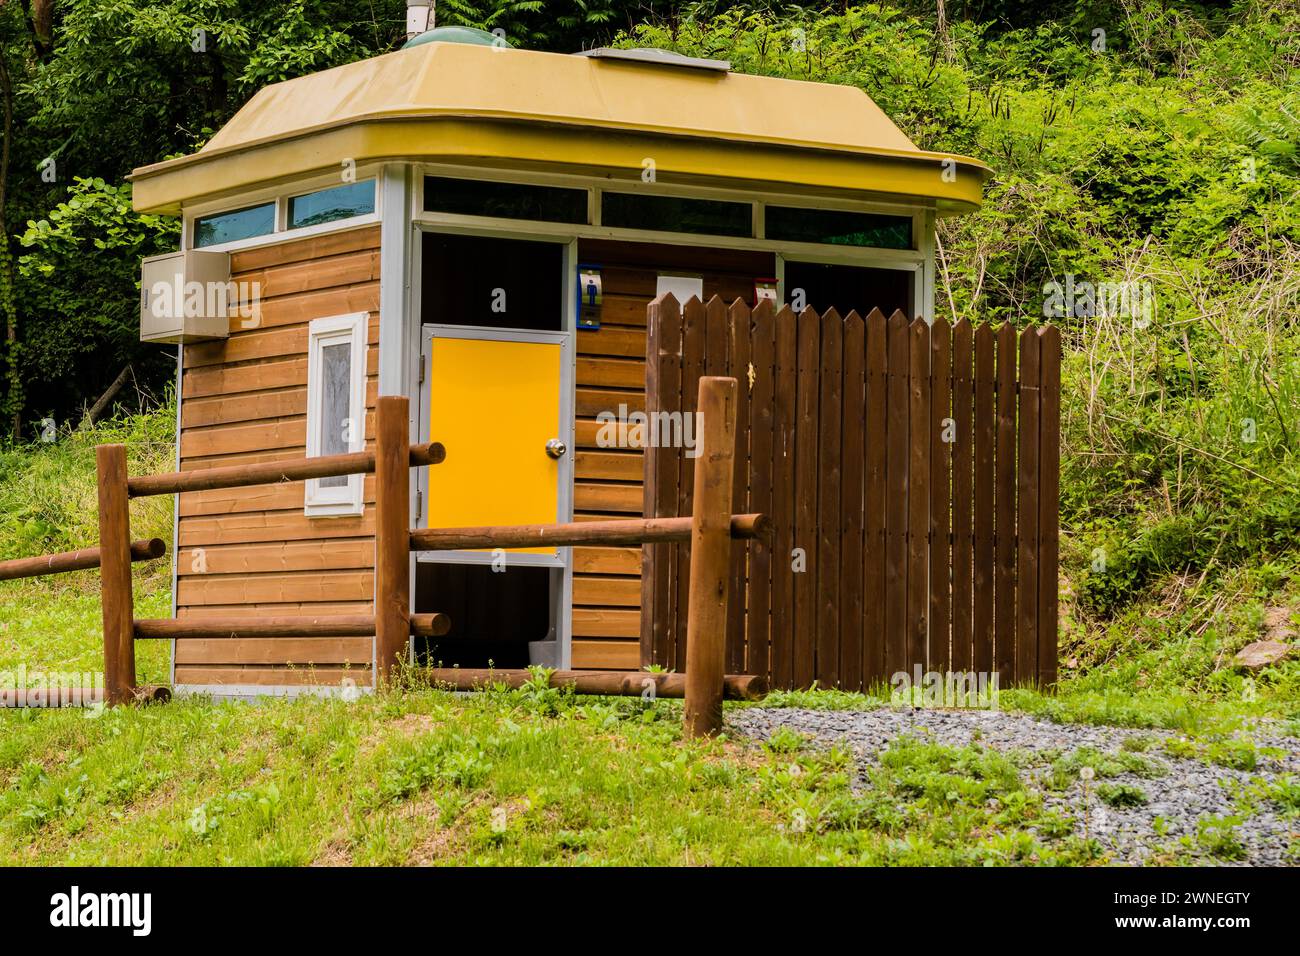 Primer plano de baños públicos de madera en una zona de parque forestal en Corea del Sur Foto de stock